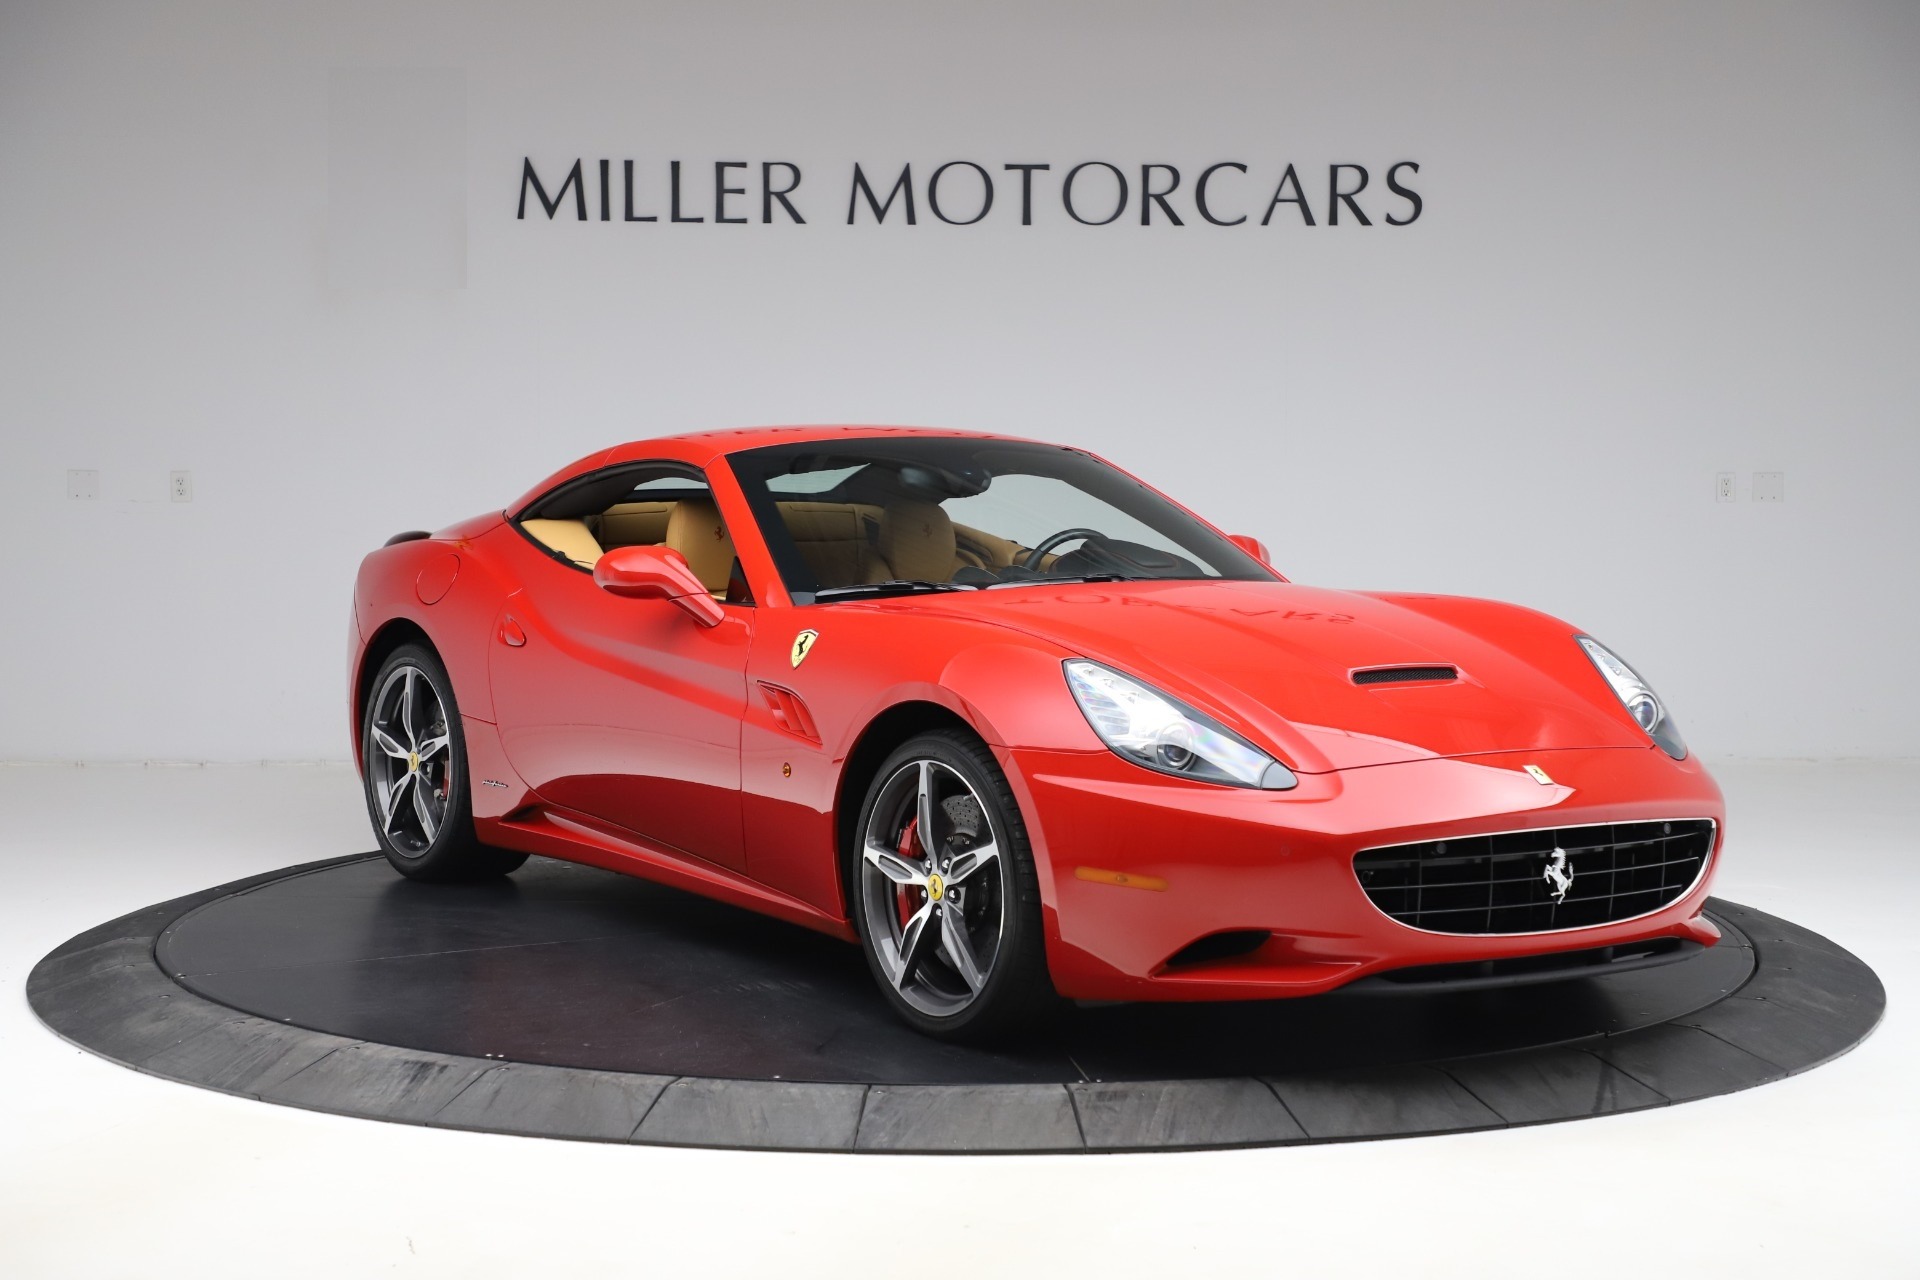 Pre Owned 2014 Ferrari California 30 For Sale Miller Motorcars Stock 4657